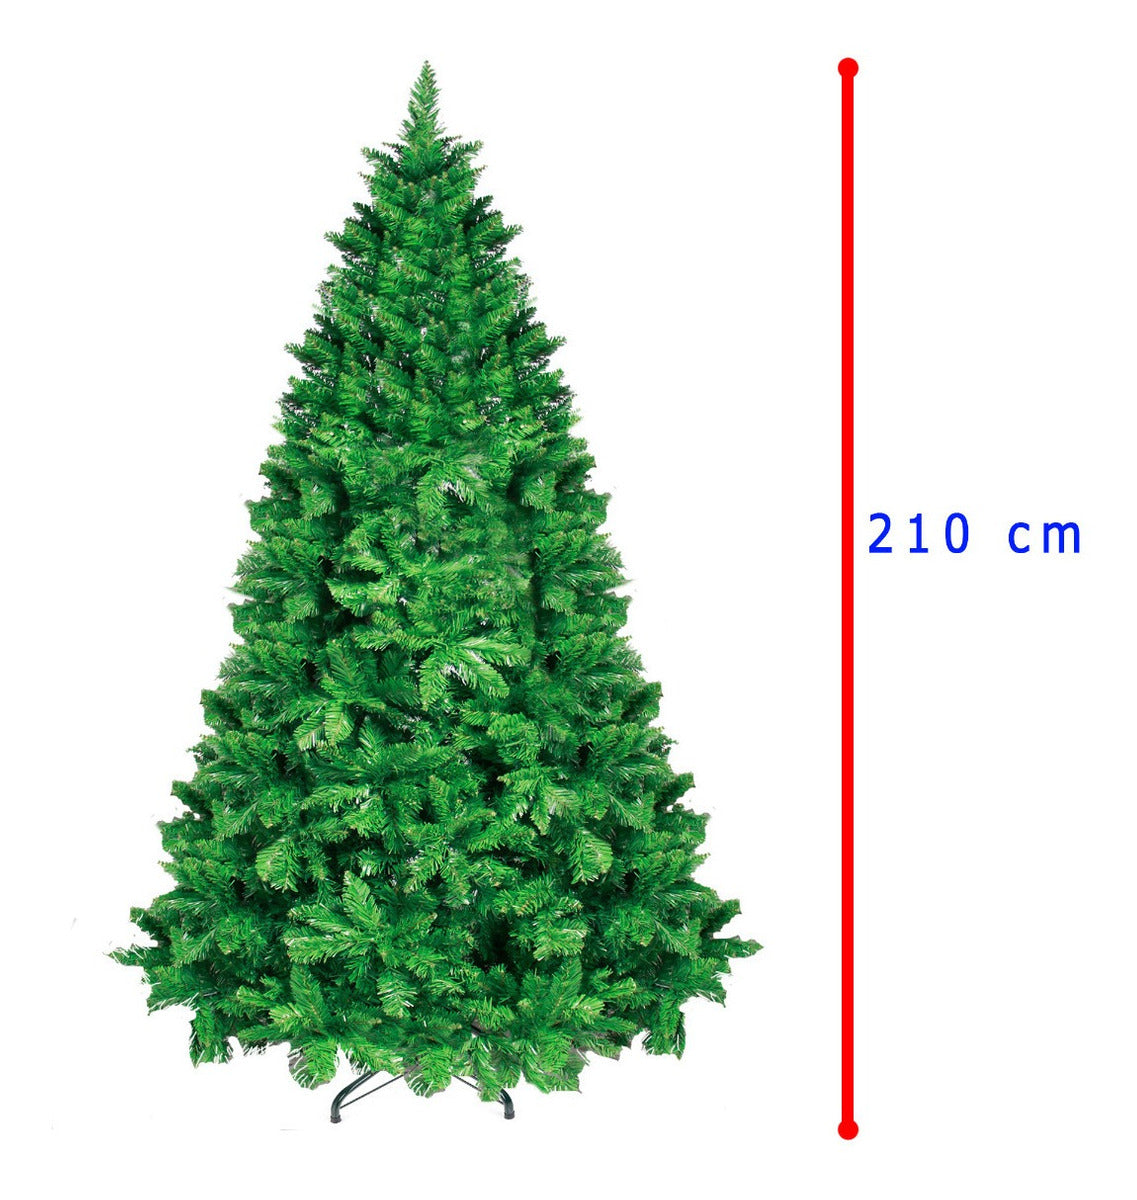 Arbol Navidad Pino 2.10m Artificial 1580 Ramas Verde Grande